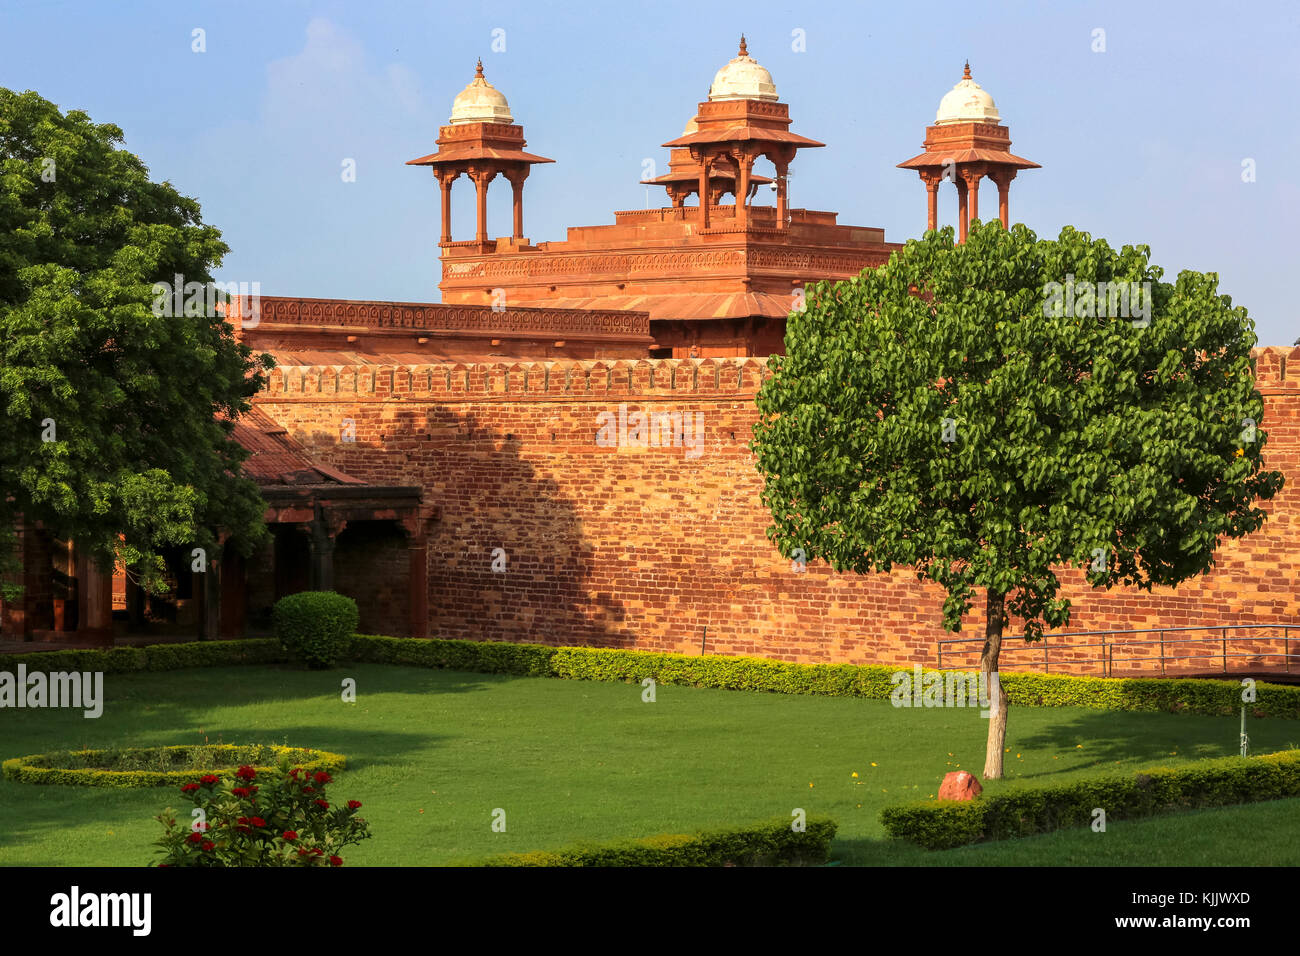 Fatehpur Sikri, im Jahre 1569 von der Großmogul Akbar gegründet, war die Hauptstadt des Mughal Reiches von 1571 bis 1585. Imperial Palace Complex. Stockfoto